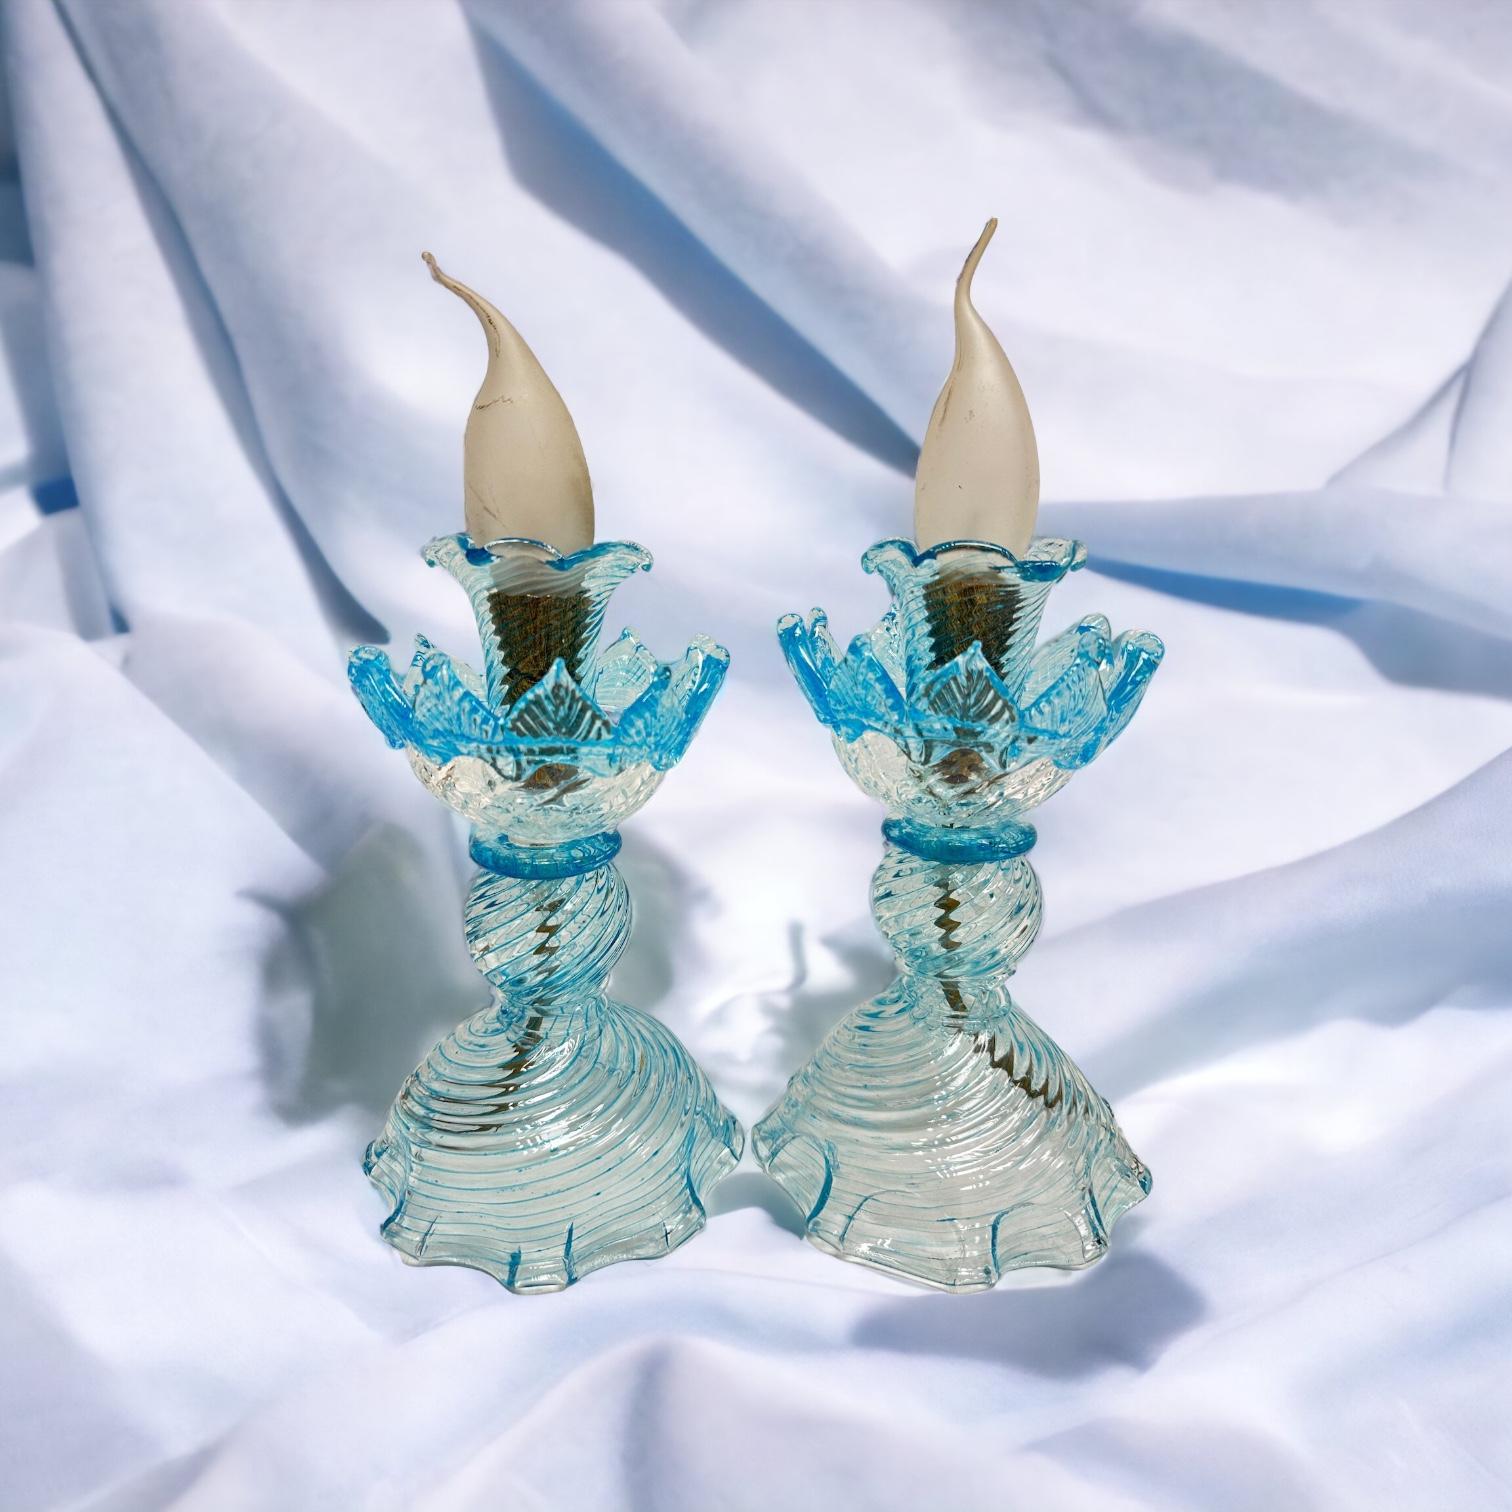 Magnifique paire de petites lampes de table ou de chevet. En verre clair de Murano avec des bords bleu clair, fabriqué par une entreprise de verre de Murano à Venise, en Italie. Chaque lampe nécessite une ampoule Candélabre européenne E14 / 110